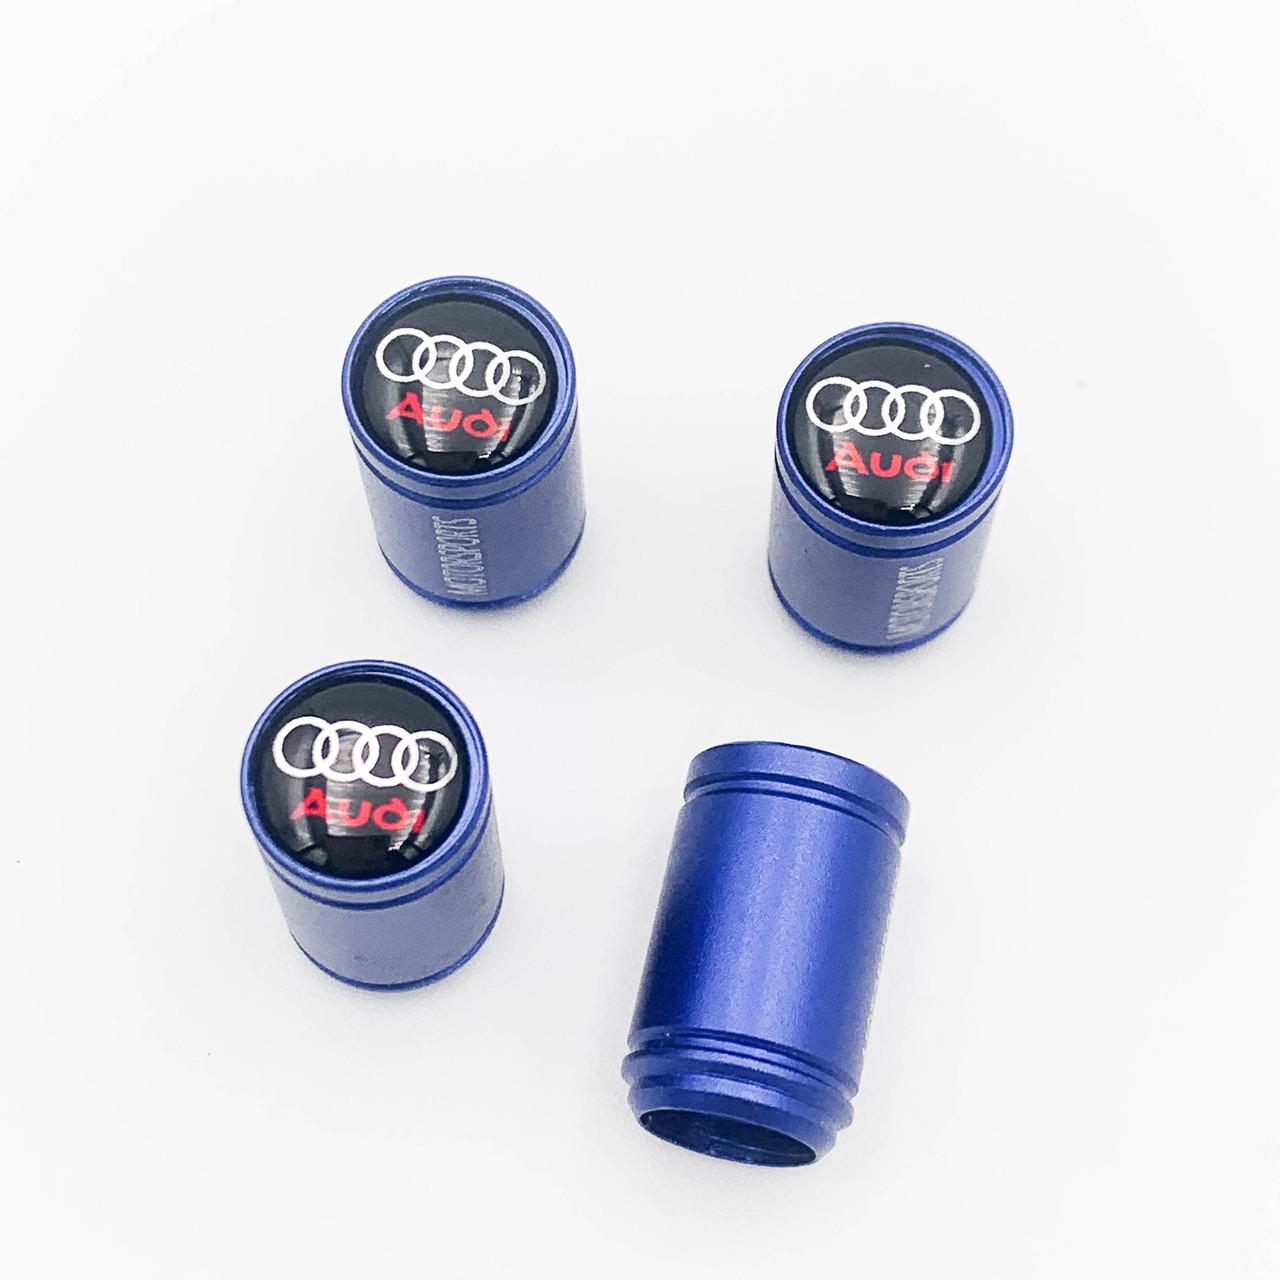 Захисні ковпачки на ніпеля Motosport Audi 4 шт. Синій (LB-009A)